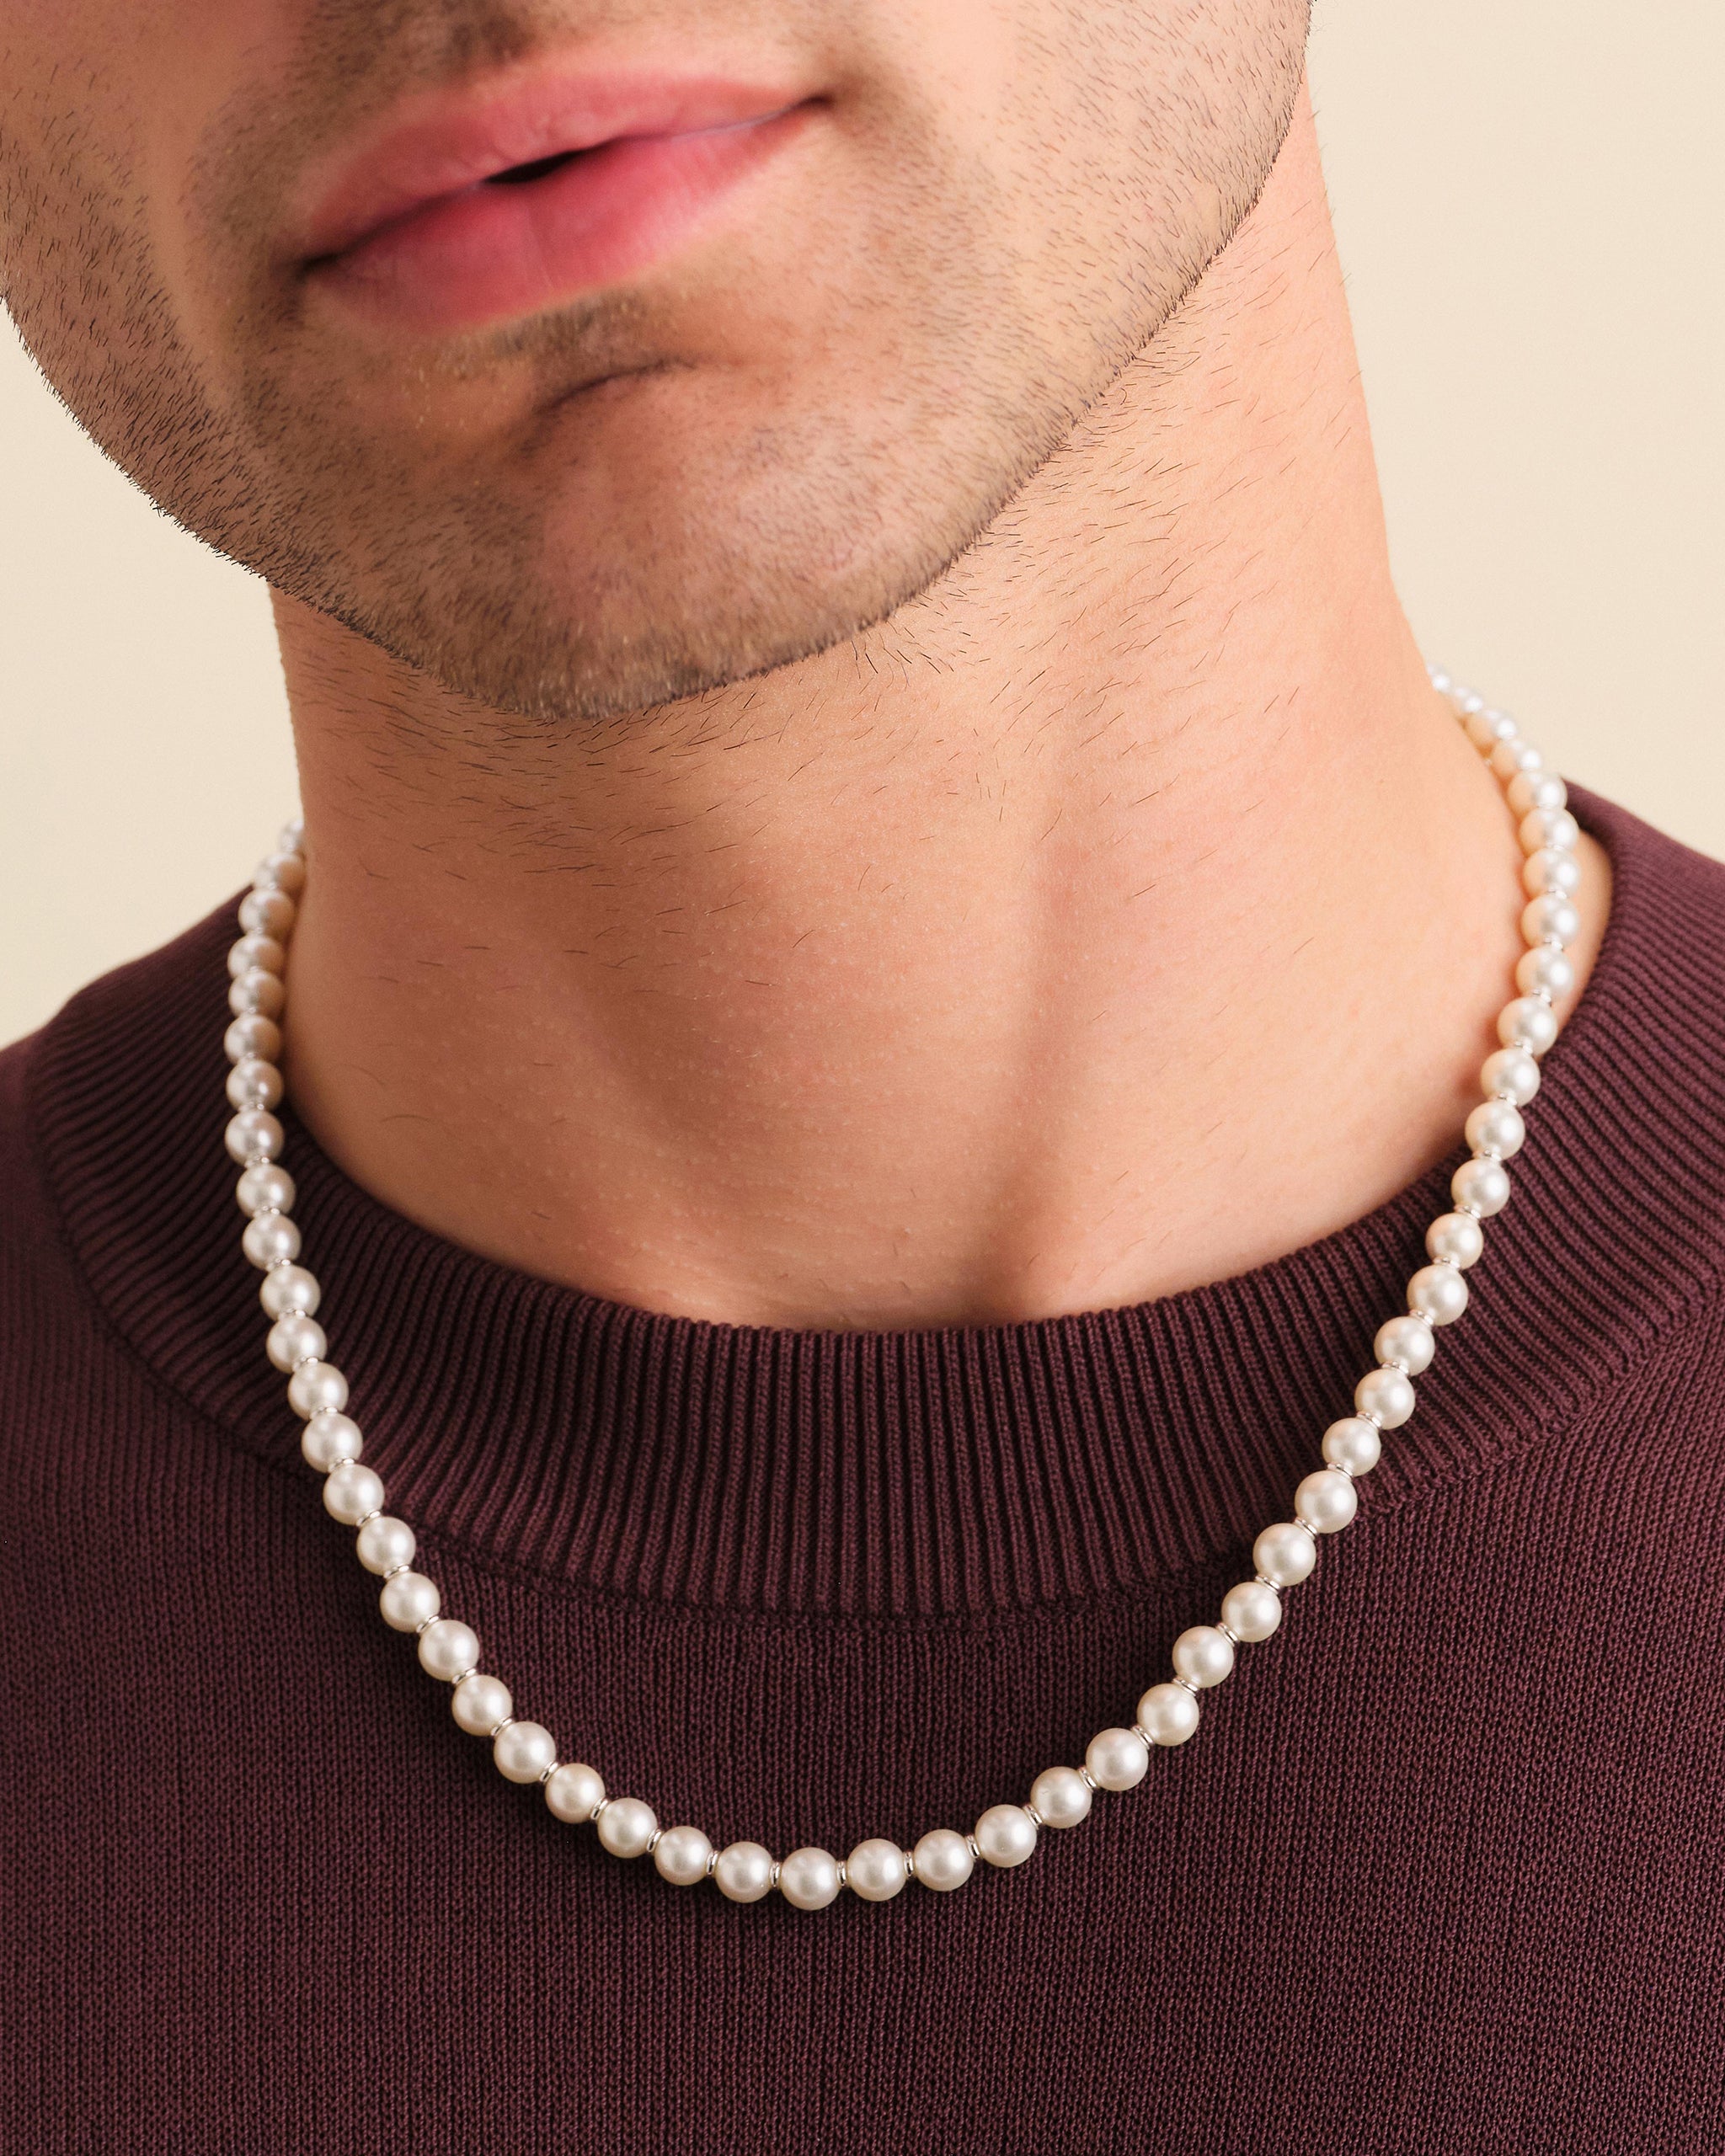 Men's Pearl Jewelry: Necklaces, Bracelets, & Earrings | JAXXON